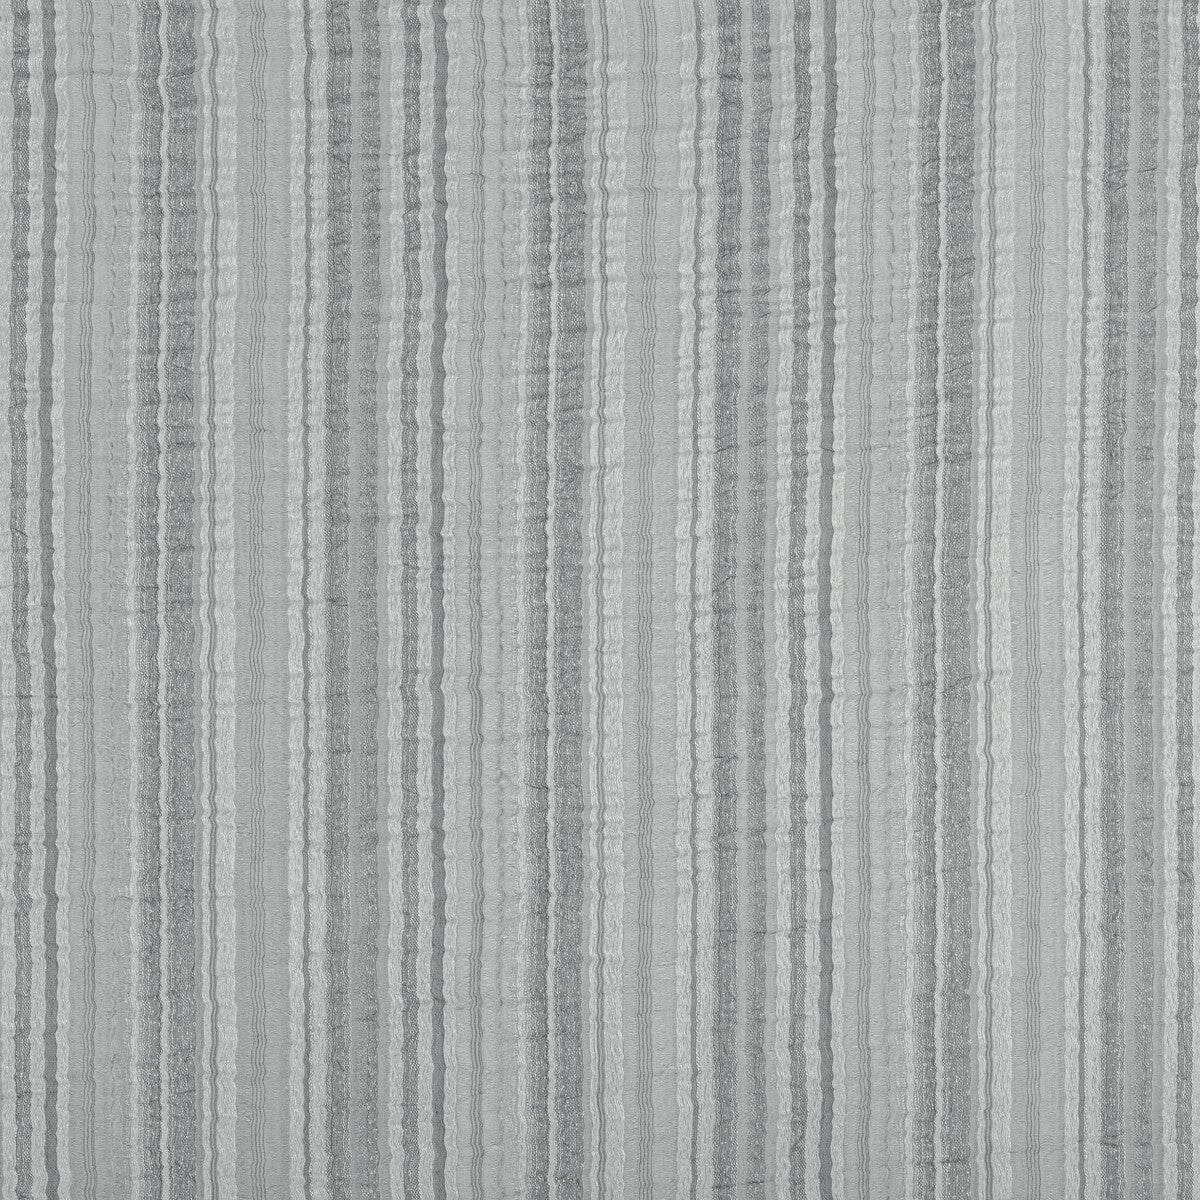 Kravet Basics fabric in 4866-11 color - pattern 4866.11.0 - by Kravet Basics